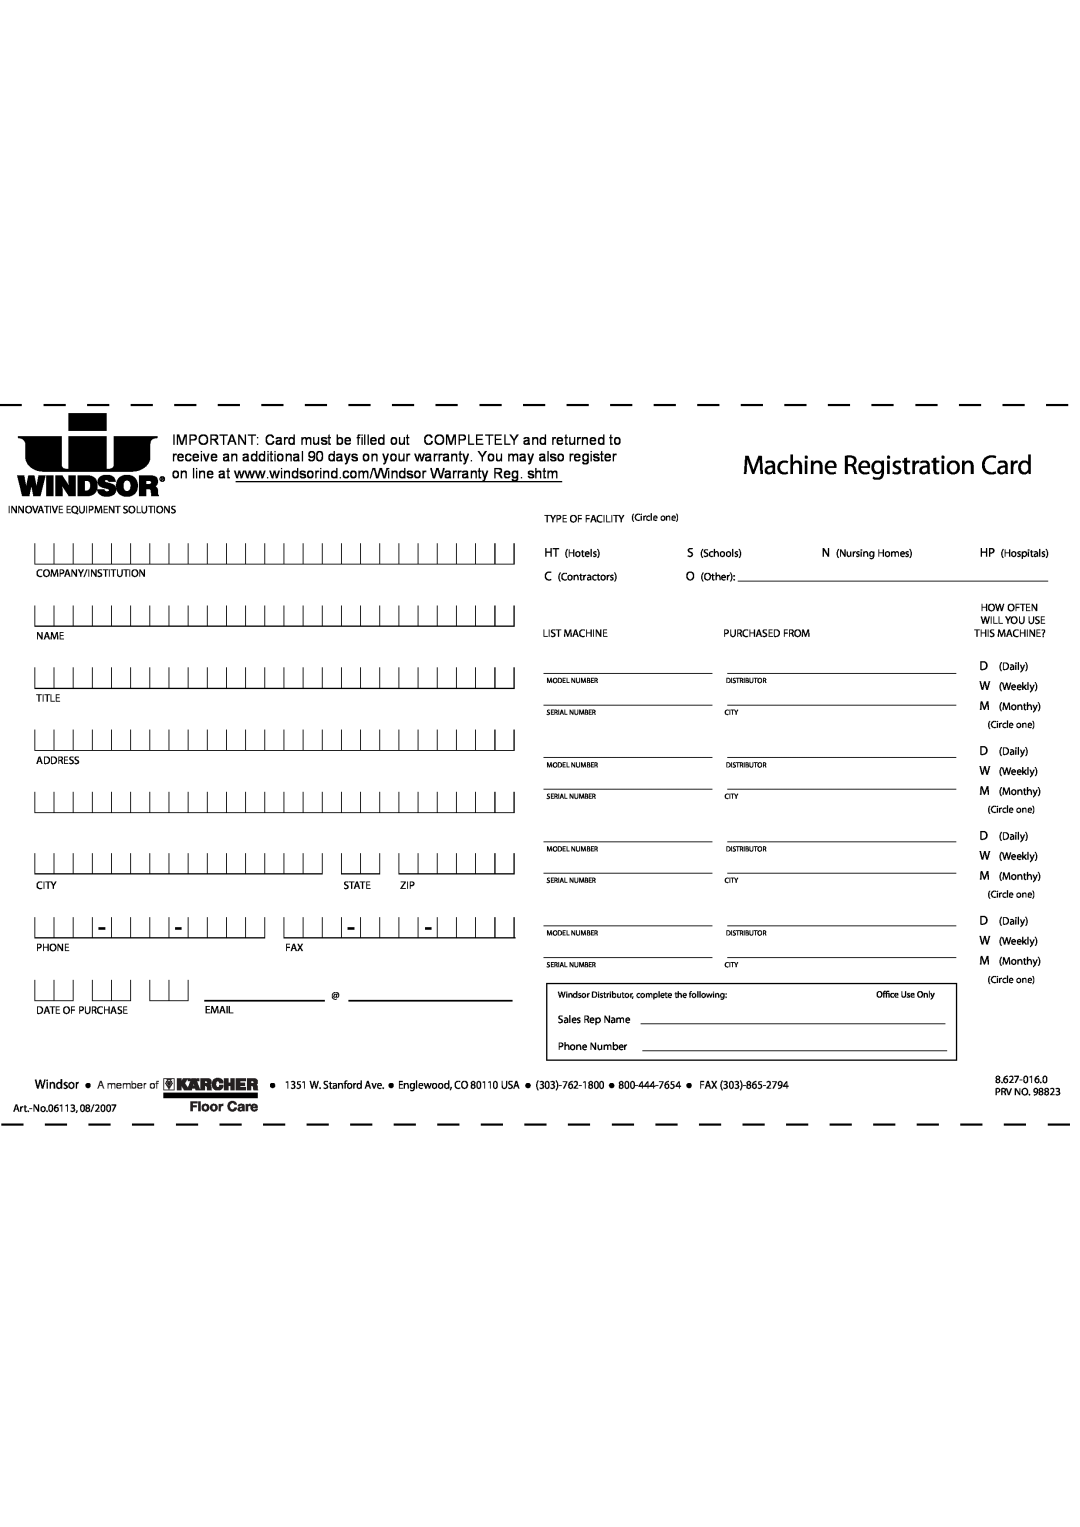 Windsor SRXP12 manual Machine Registration Card, Windsor, A member of 